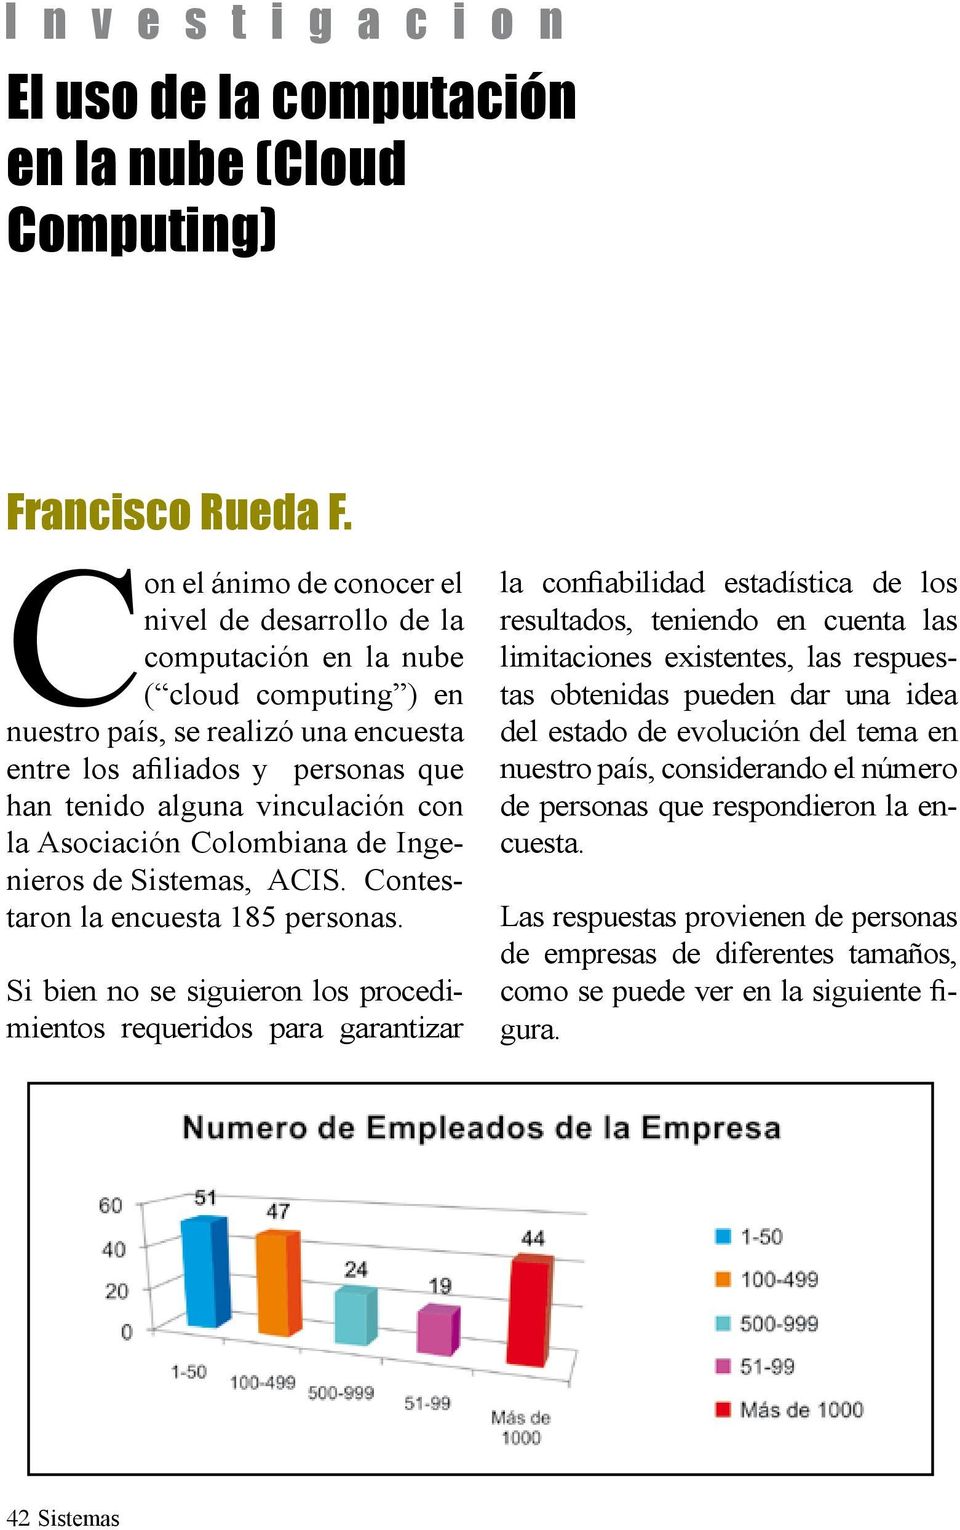 vinculación con la Asociación Colombiana de Ingenieros de Sistemas, ACIS. Contestaron la encuesta 185 personas.